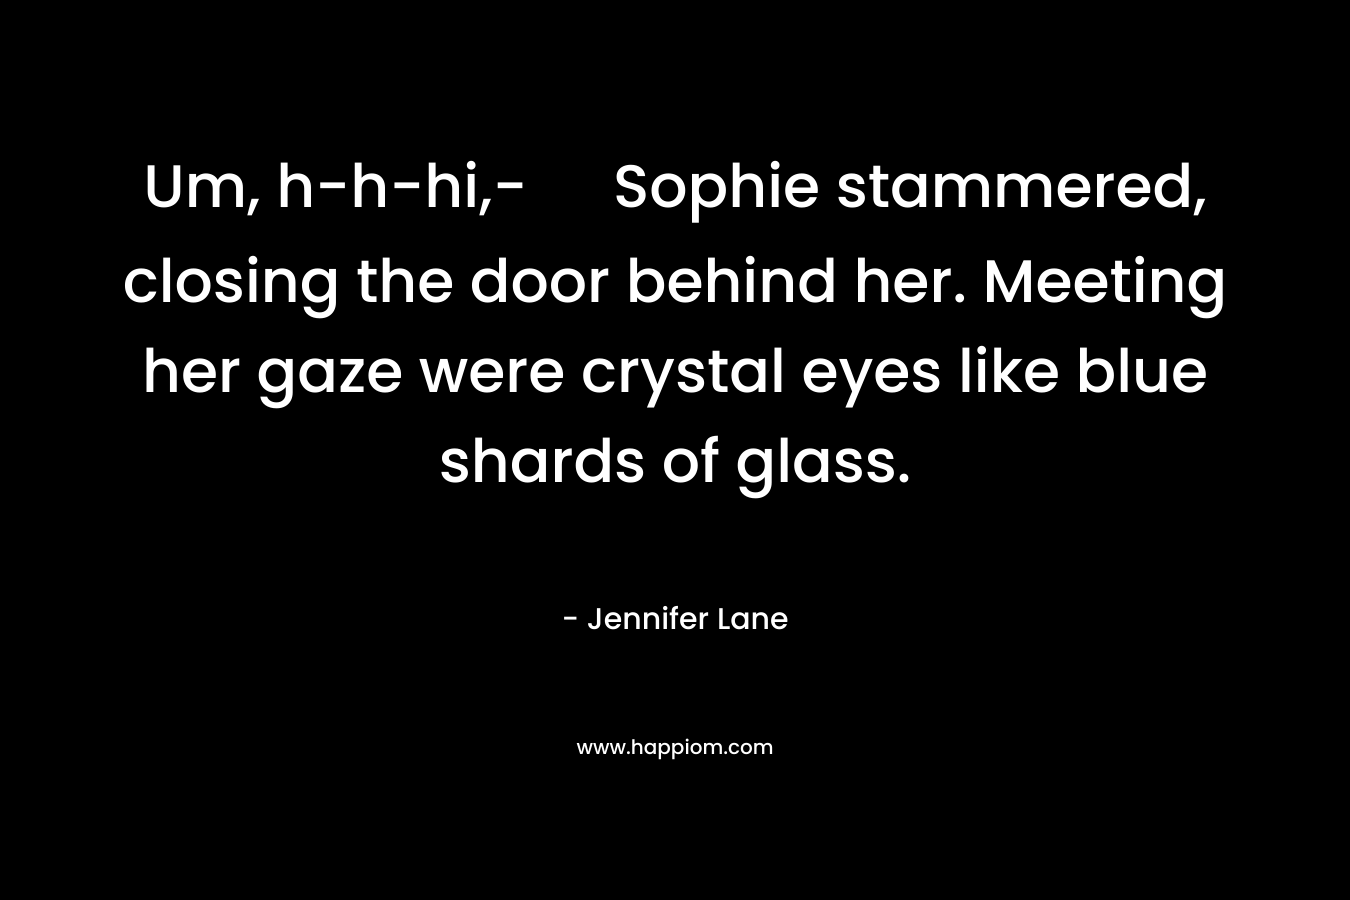 Um, h-h-hi,- Sophie stammered, closing the door behind her. Meeting her gaze were crystal eyes like blue shards of glass. – Jennifer Lane